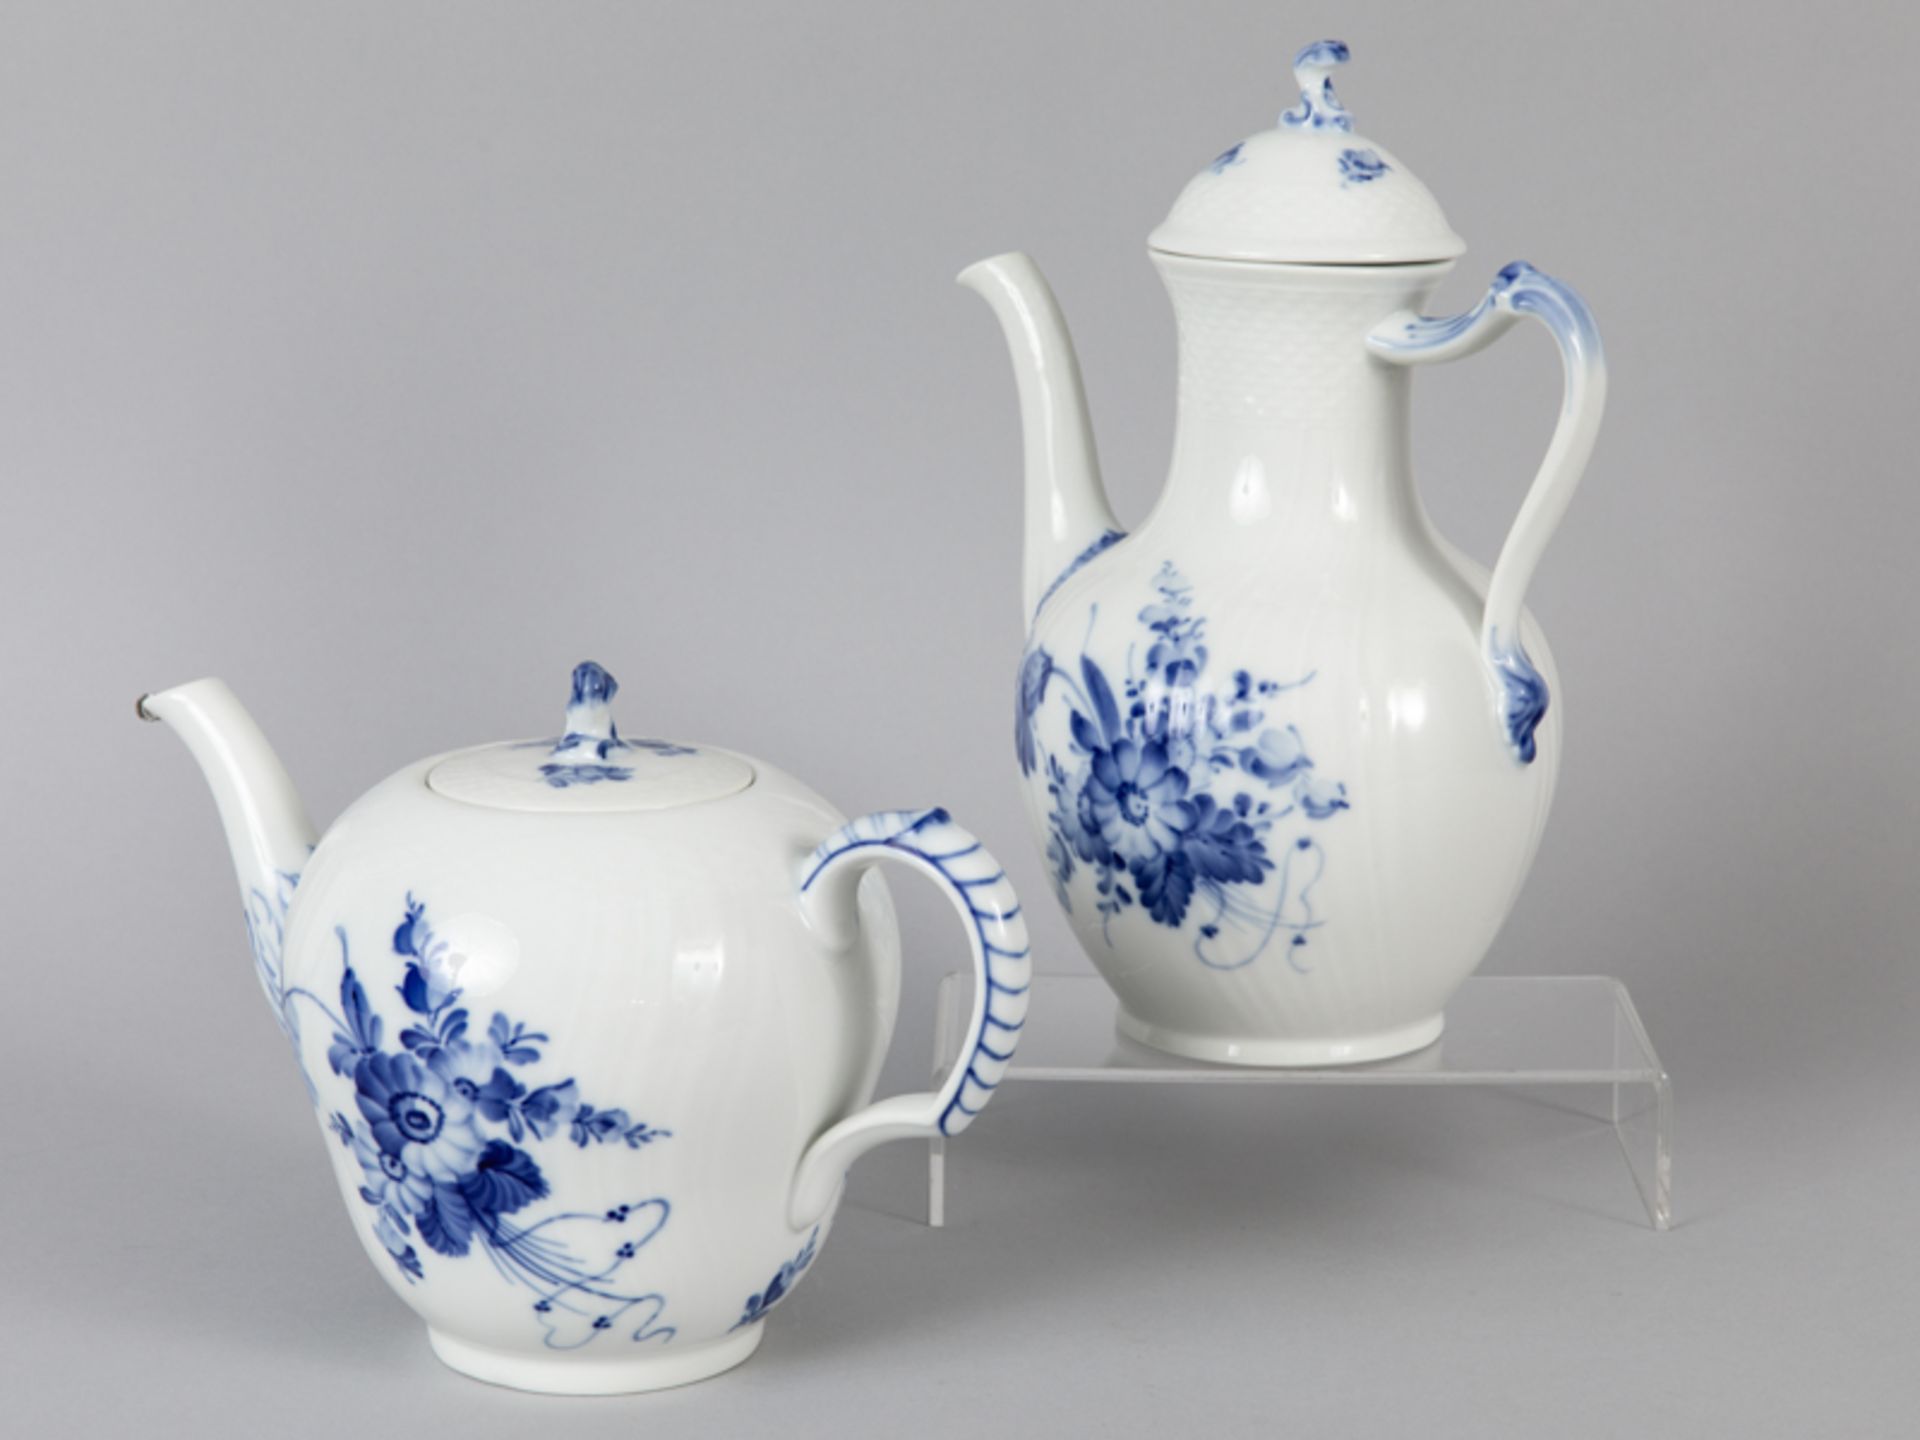 GroÃŸe Teekanne und Kaffeekanne, "Blaue Blume", Royal Copenhagen, 20. Jh. brWeiÃŸporzellan mit unter - Image 3 of 4